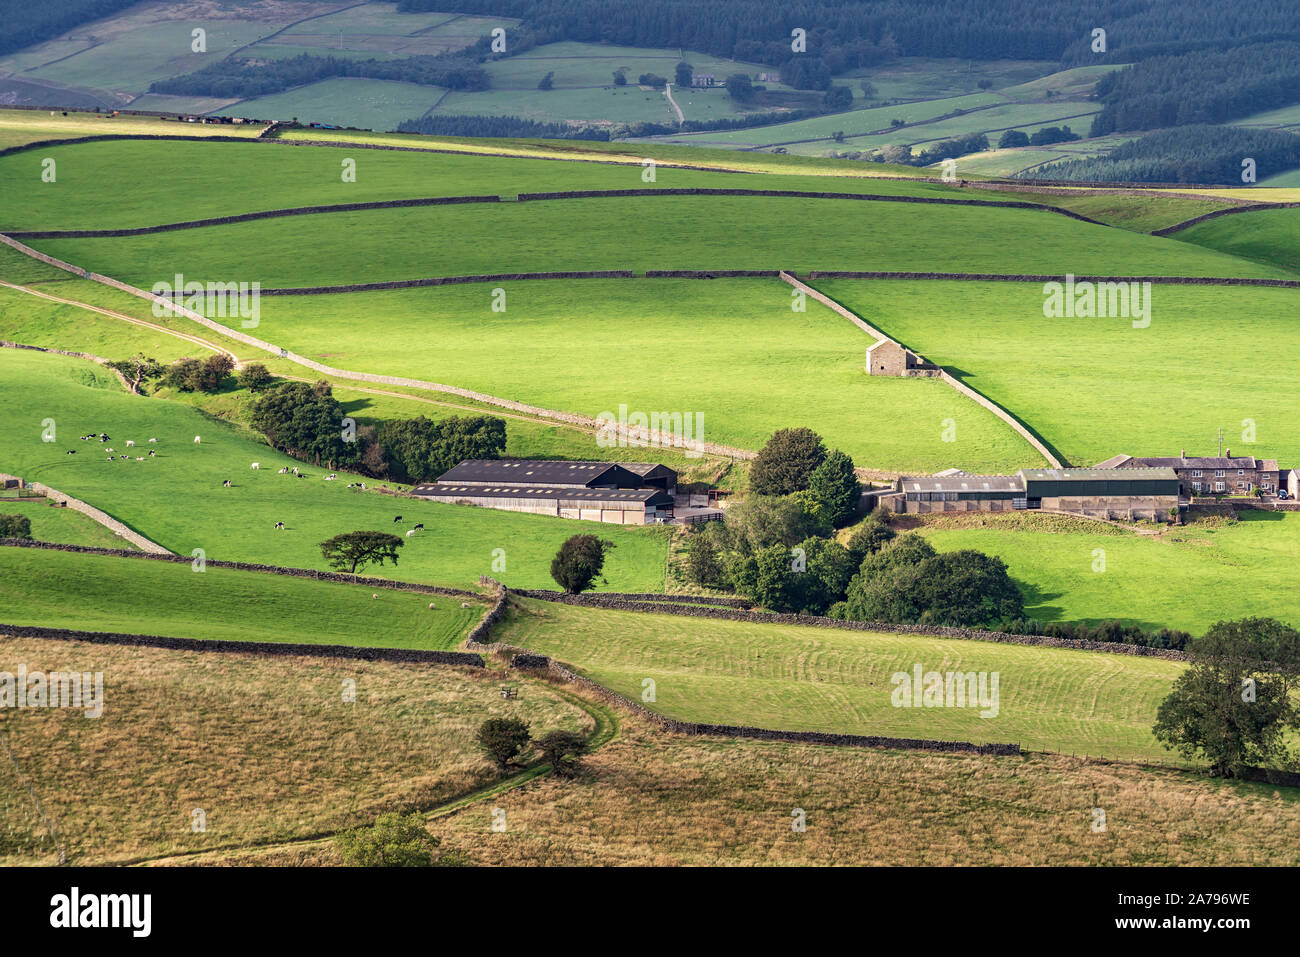 Edifici agricoli, campi verdi, muri in pietra a secco e da un fienile, Nidderdale, North Yorkshire, Inghilterra. Foto Stock